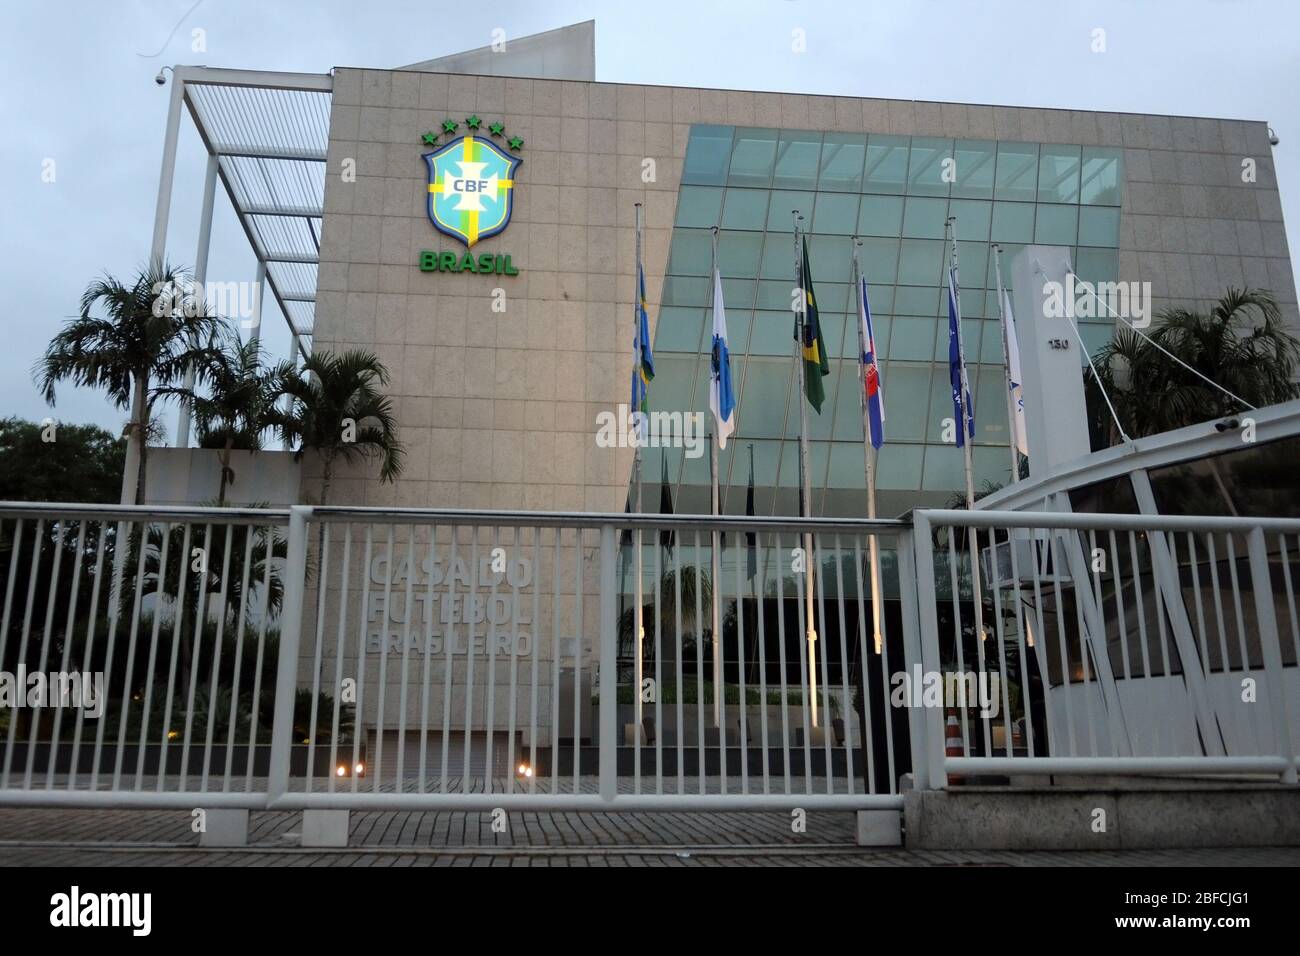 Rio de Janeiro, Brasile, 17 aprile 2020. Sede centrale CBF. La Confederazione di calcio brasiliana è la più alta entità di calcio in Brasile, situata in Foto Stock